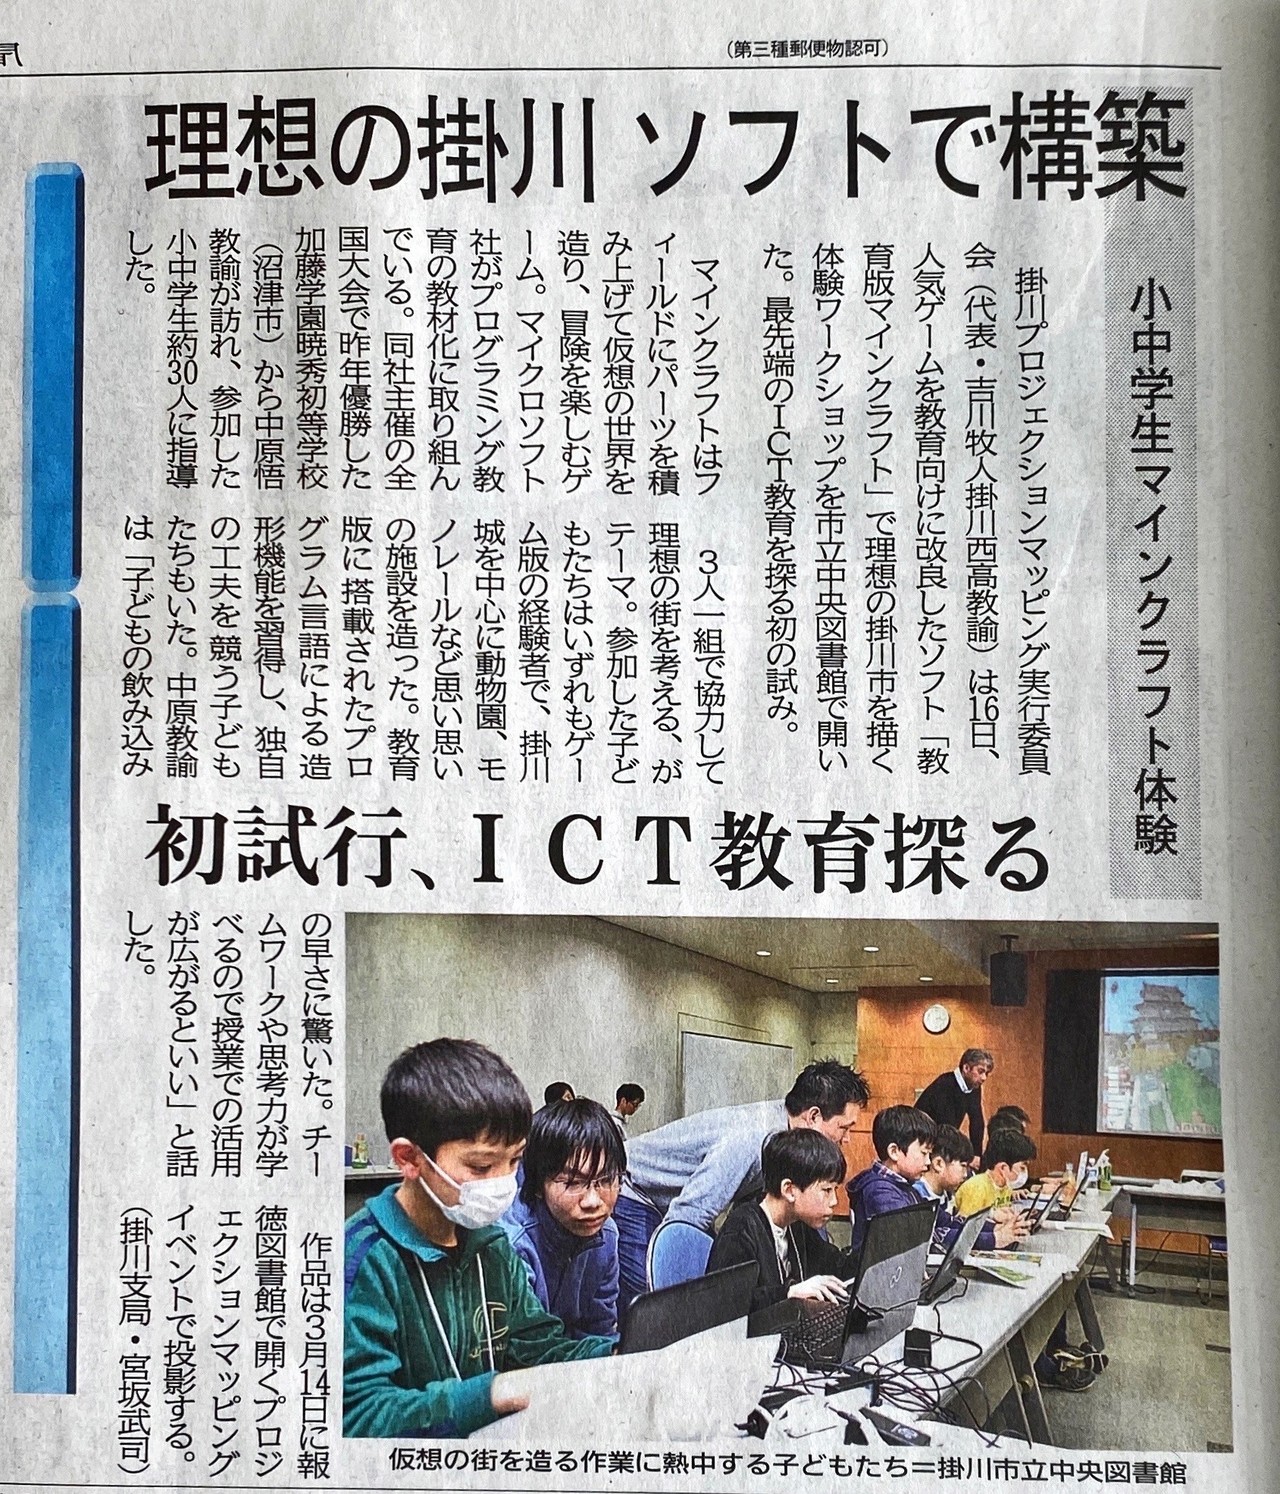 Minecraft プロジェクションマッピングワークショップ Part６ 静岡新聞に載りました 吉川 牧人 Makito Kikkawa 高校教師 世界史 Ict Note